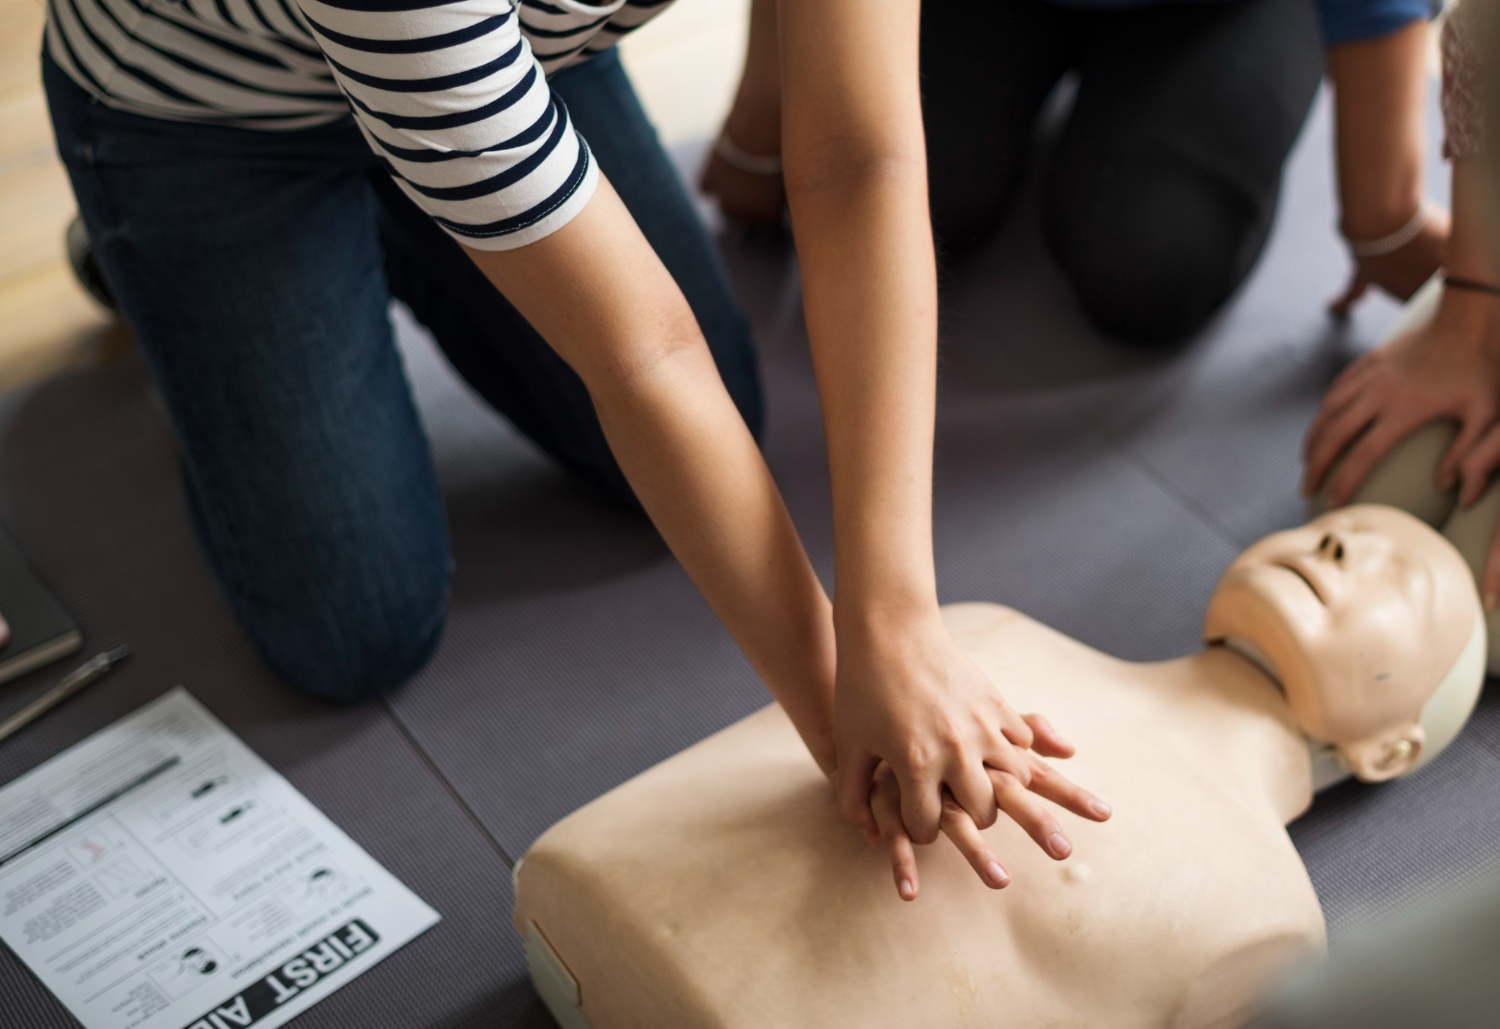 Mengenal Prosedur CPR, Pertolongan Pertama untuk Korban Henti Jantung